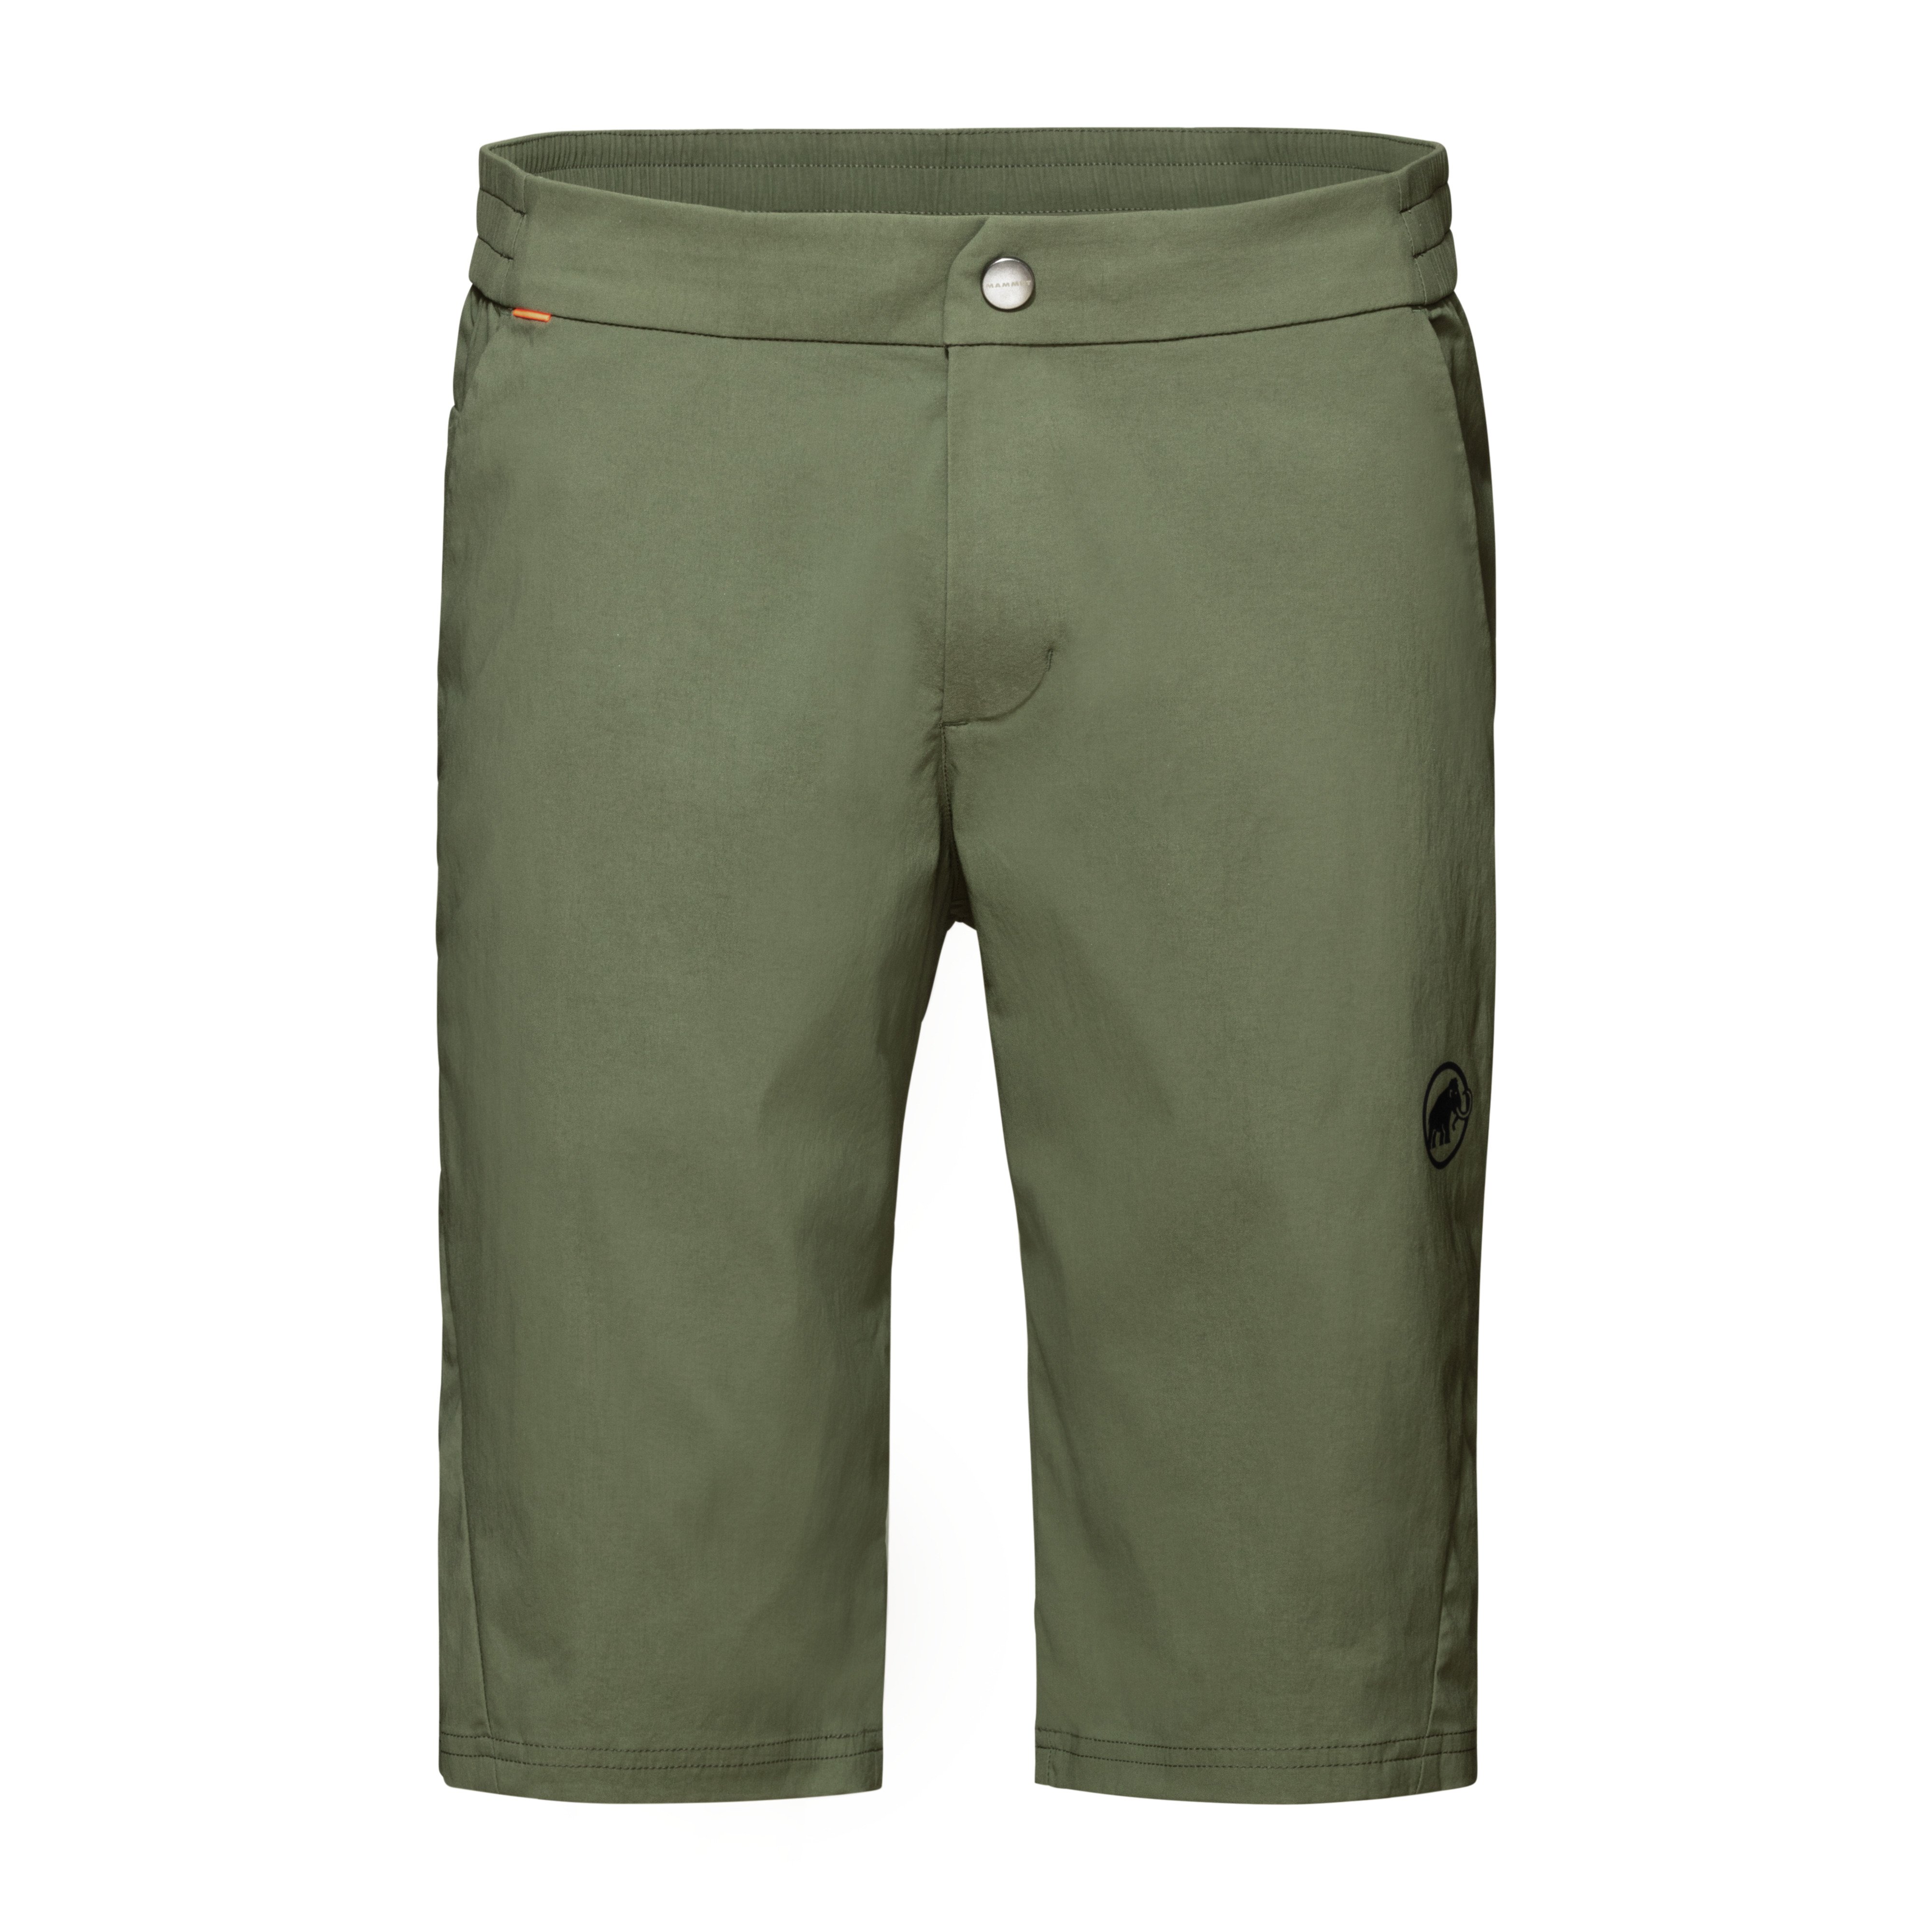 Hueco Shorts Men - iguana, UK 28 product image